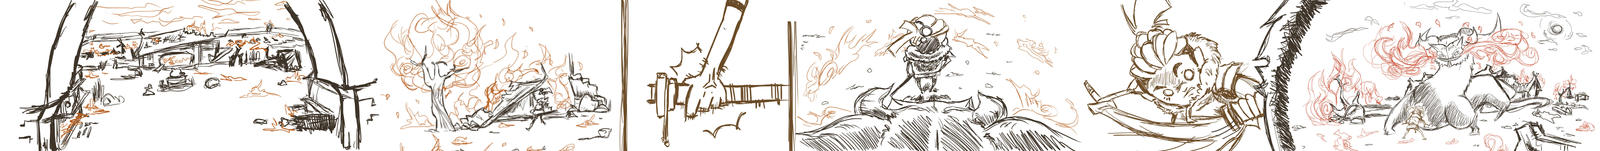 Samurai Sequence Sketch 2